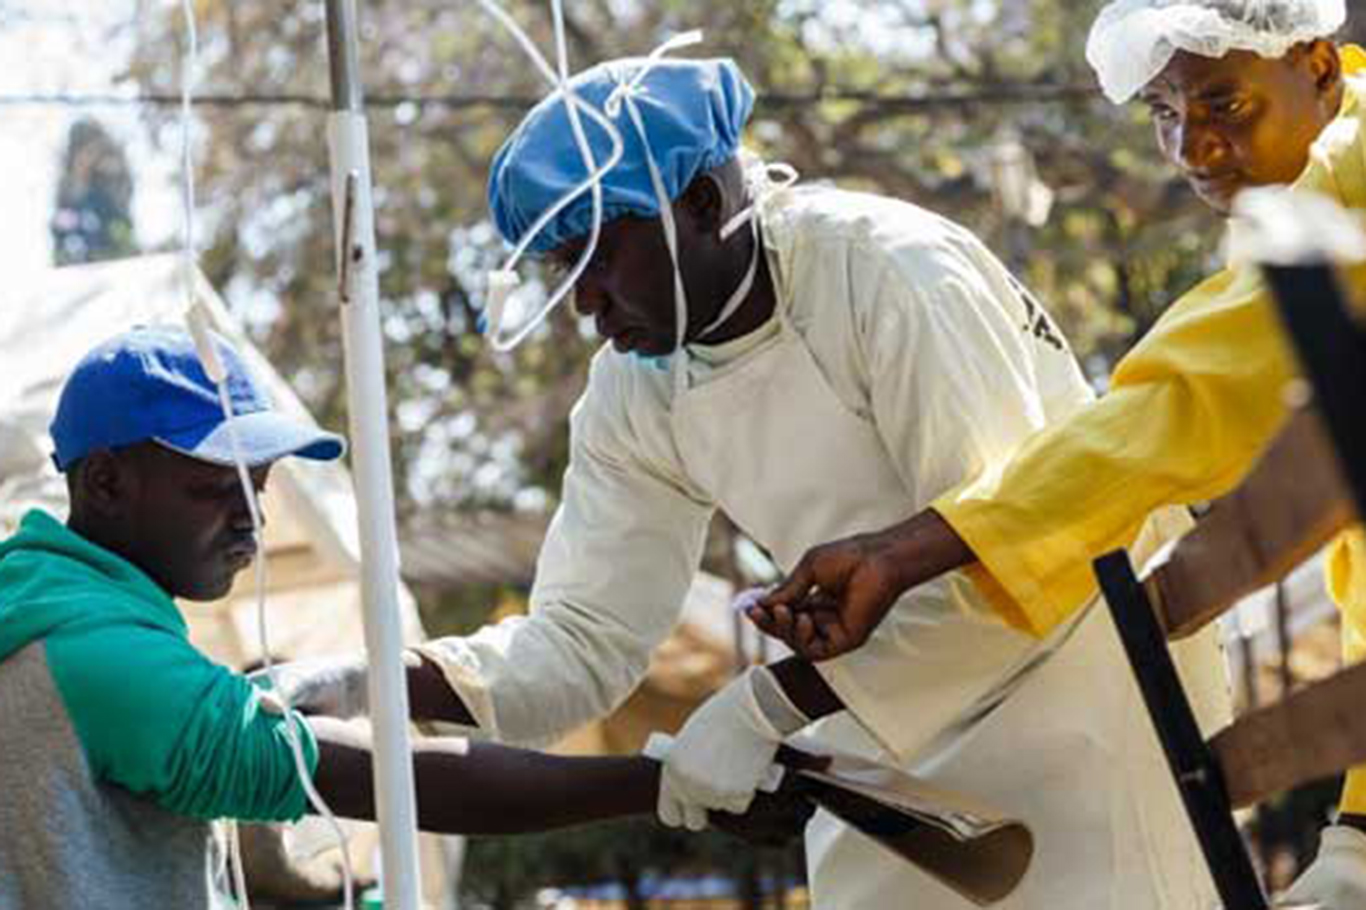 About 1000 People Killed In Malawi Cholera Outbreak İlkha Ilke News Agency